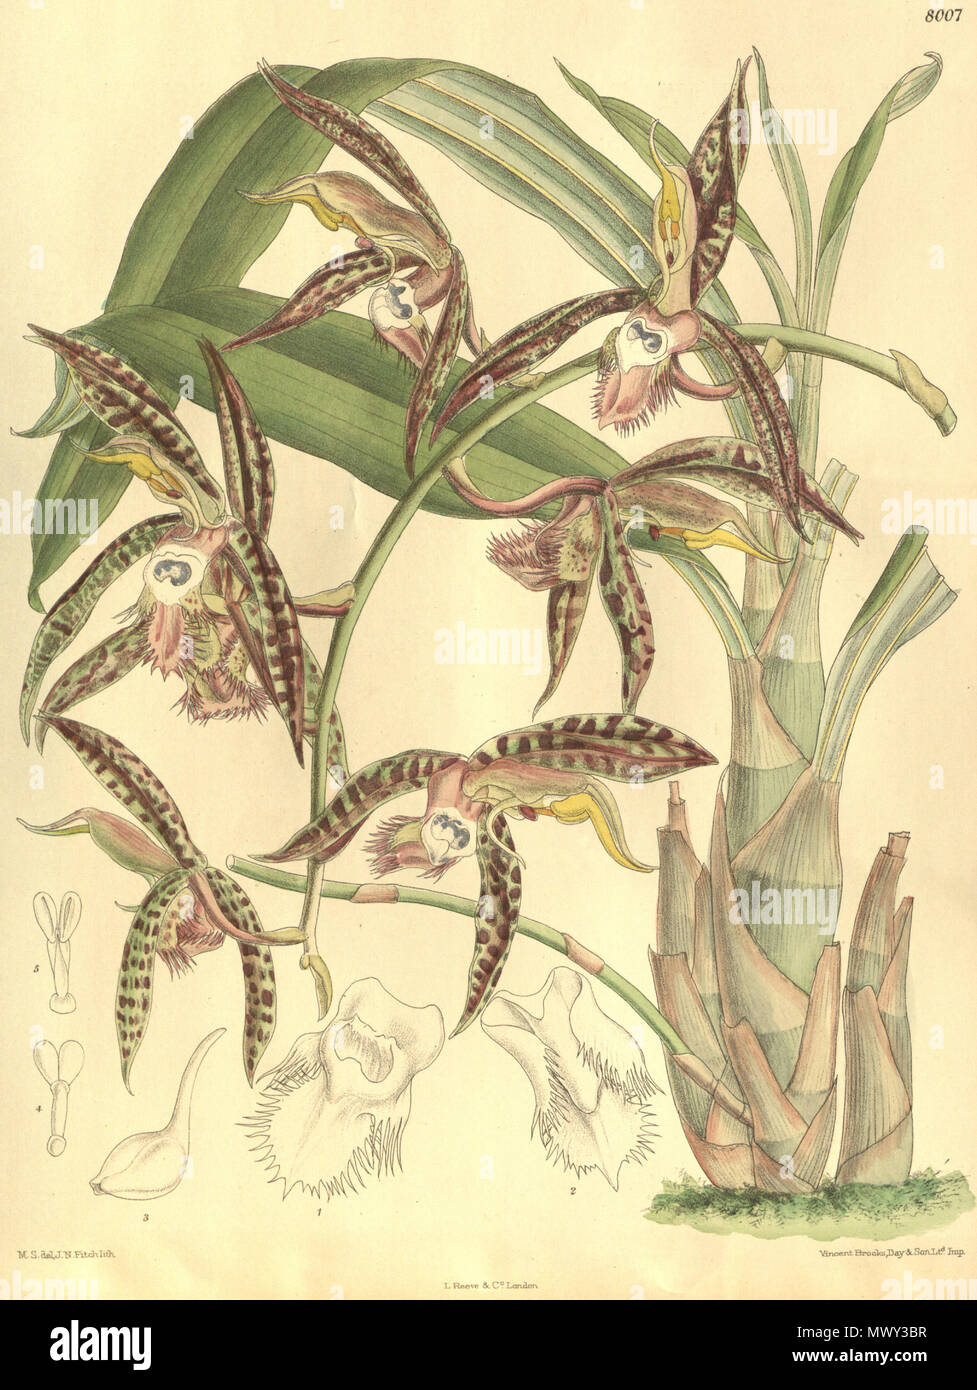 . Illustrazione di Catasetum saccatum (come syn. Catasetum christyanum) . 1905. M. S. del. ( = Matilda Smith, 1854-1926), J. N. Fitch lith. ( = John Nugent Fitch, 1840-1927) Descrizione da R. Rolfe (1855-1921) 118 Catasetum saccatum (come C. christyanum) - Curtis" 131 pl. 8007 (1905) Foto Stock